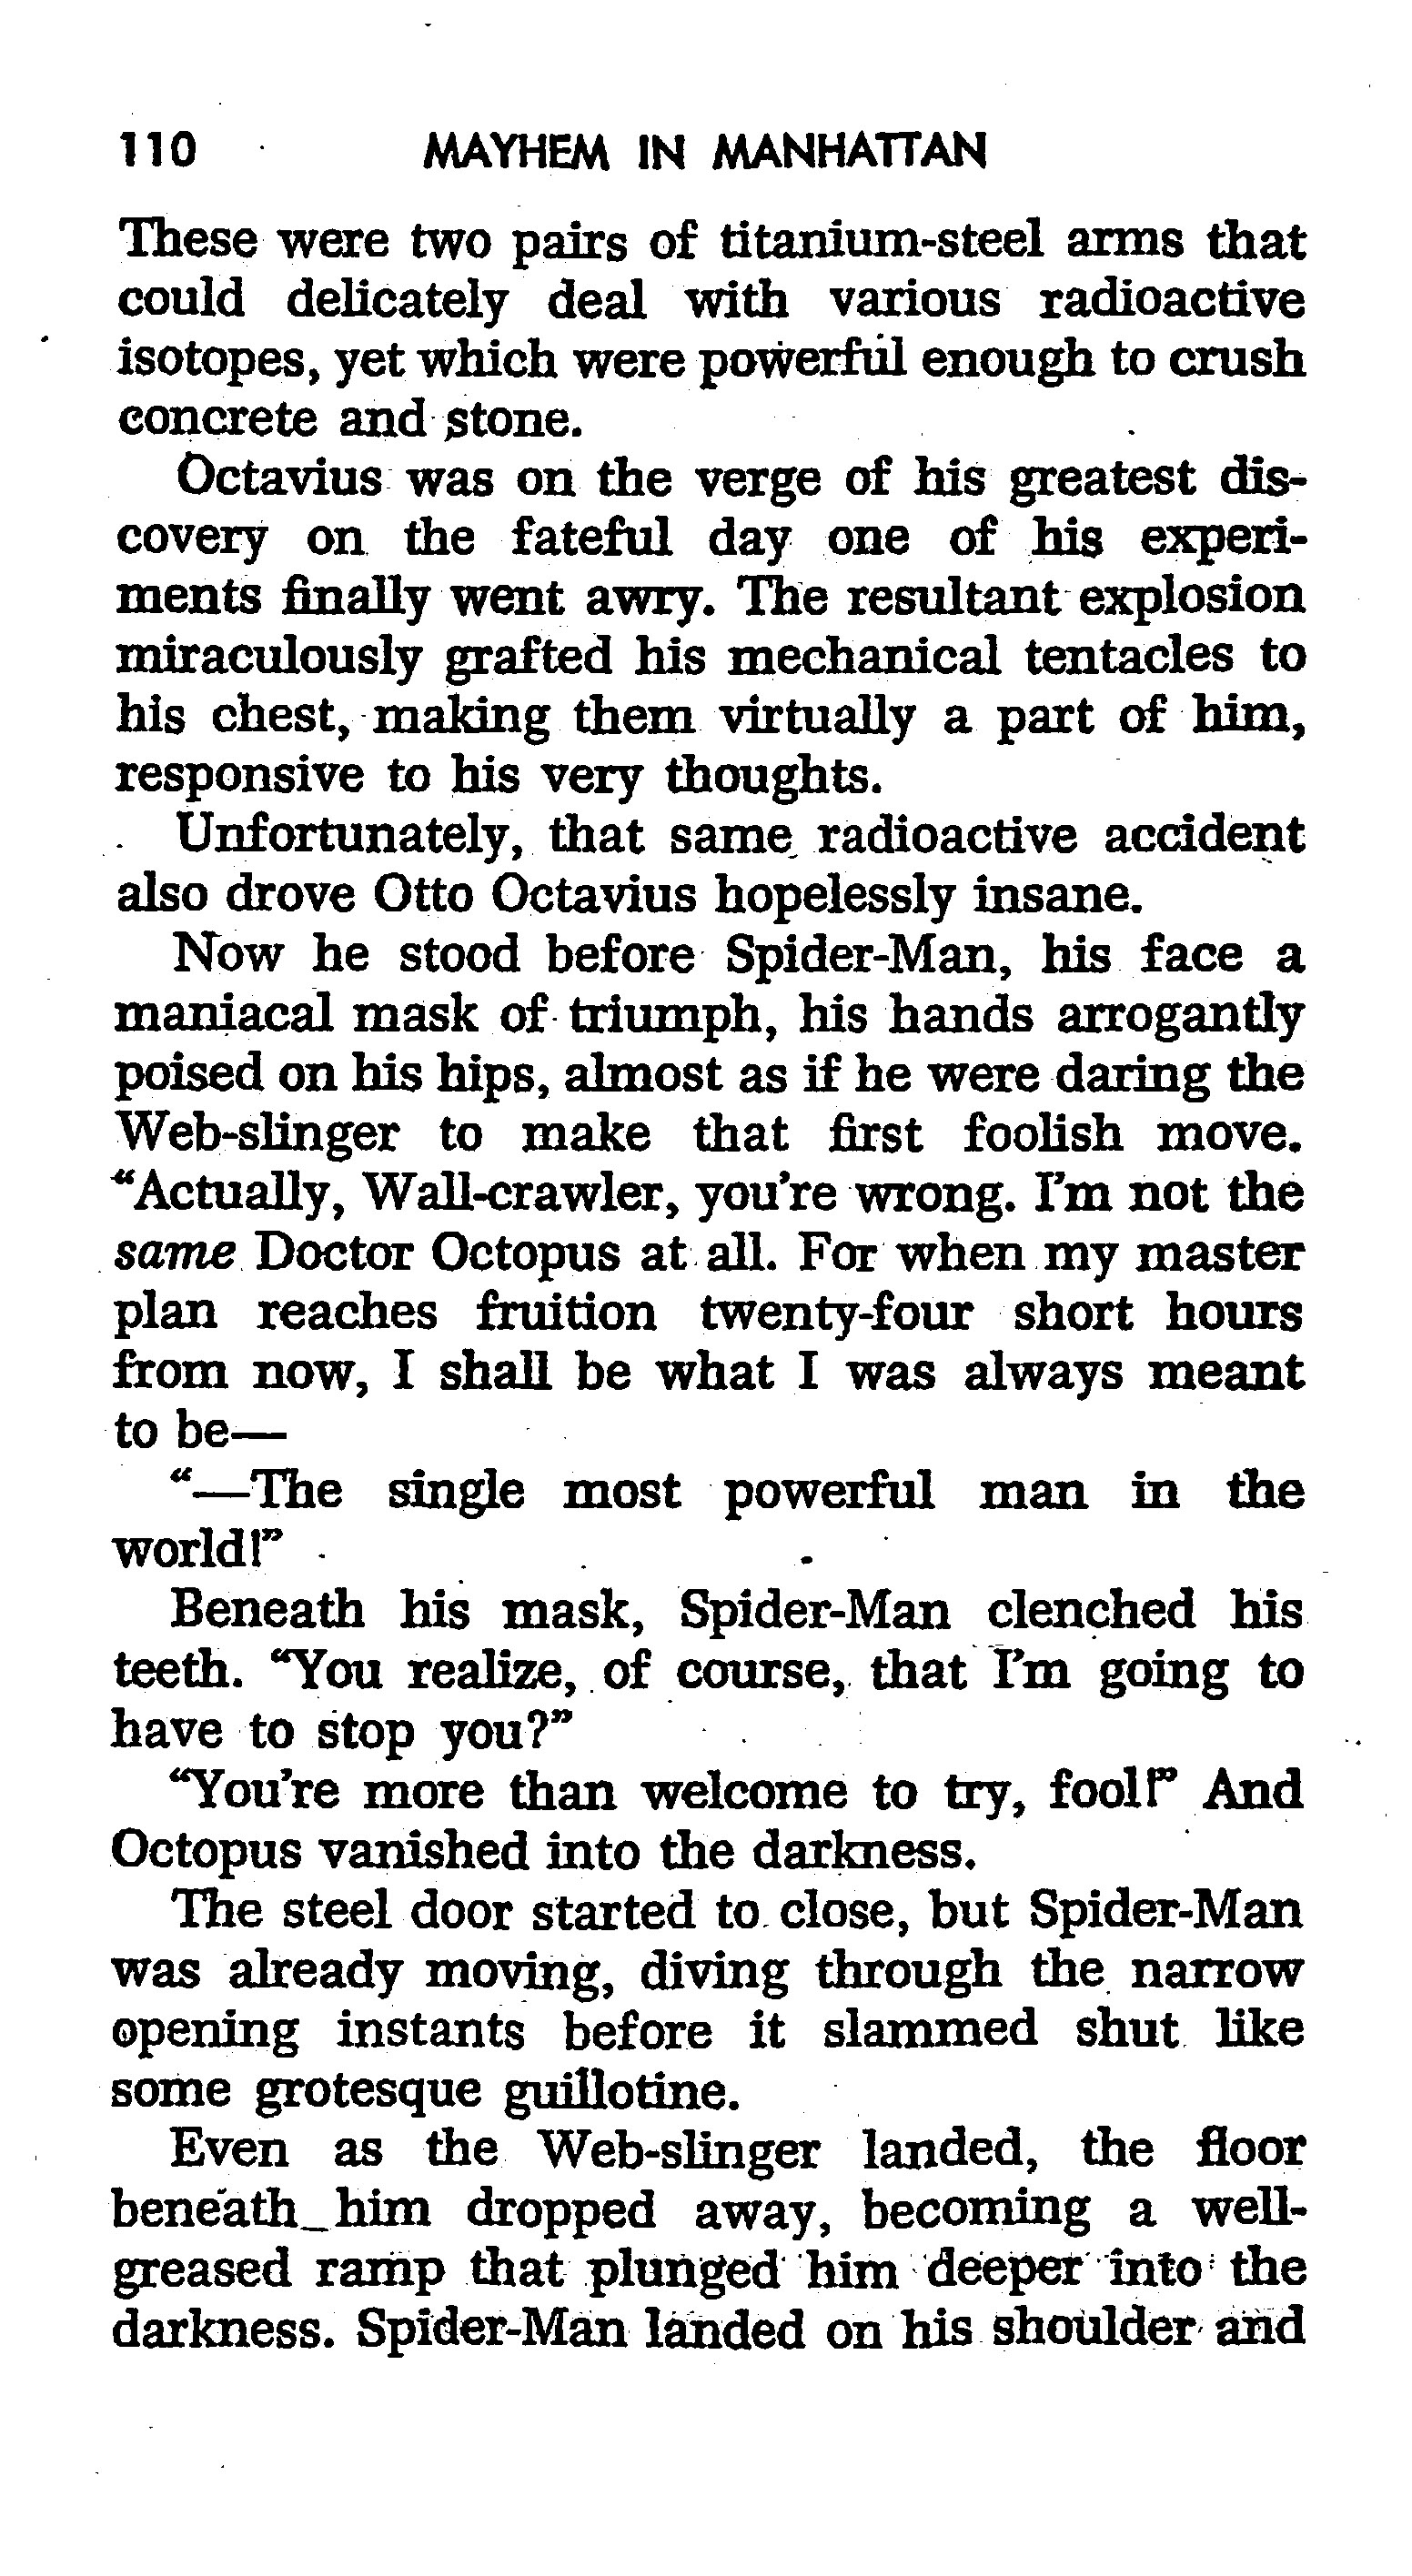 Read online The Amazing Spider-Man: Mayhem in Manhattan comic -  Issue # TPB (Part 2) - 12